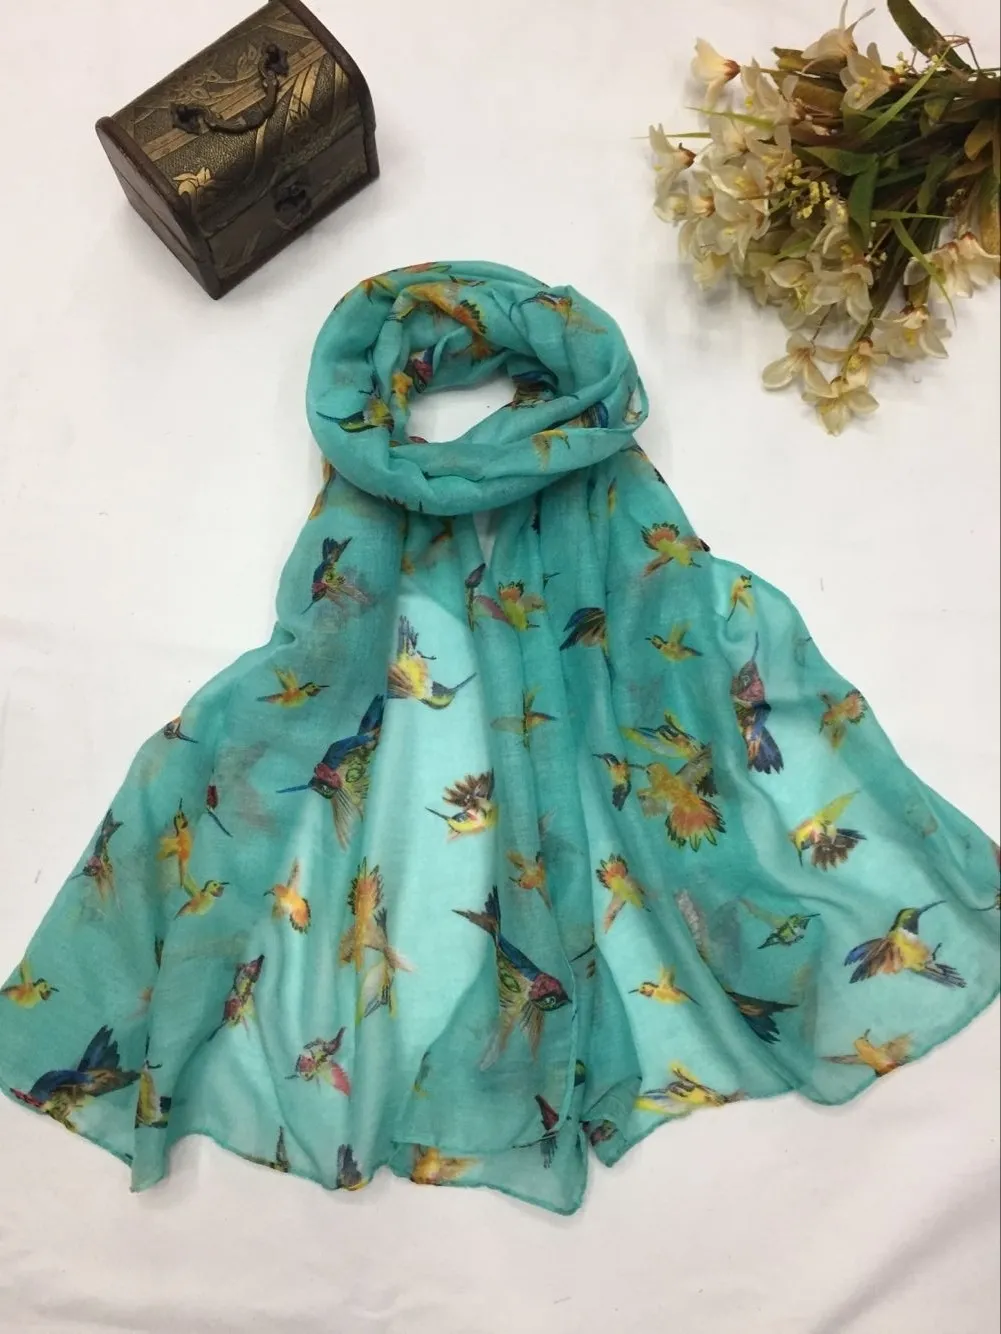 Nova moda bonito zumbido pássaro impressão cachecol feminino padrão animal envoltório xales cachecóis hijab 3 cores inteiras lot7079819